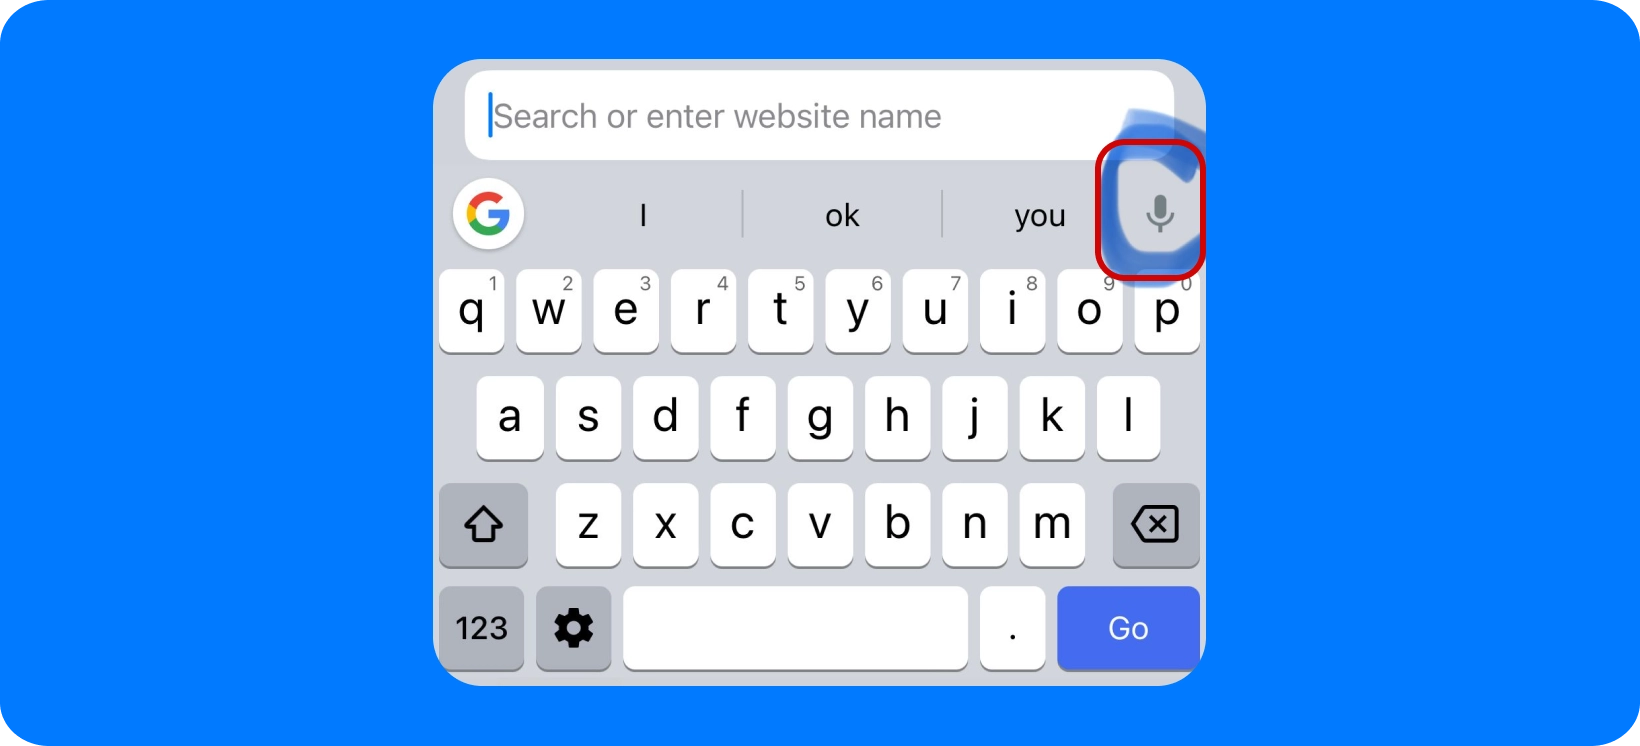 Une main tenant un smartphone Samsung affichant la barre de recherche Google avec option de recherche vocale.